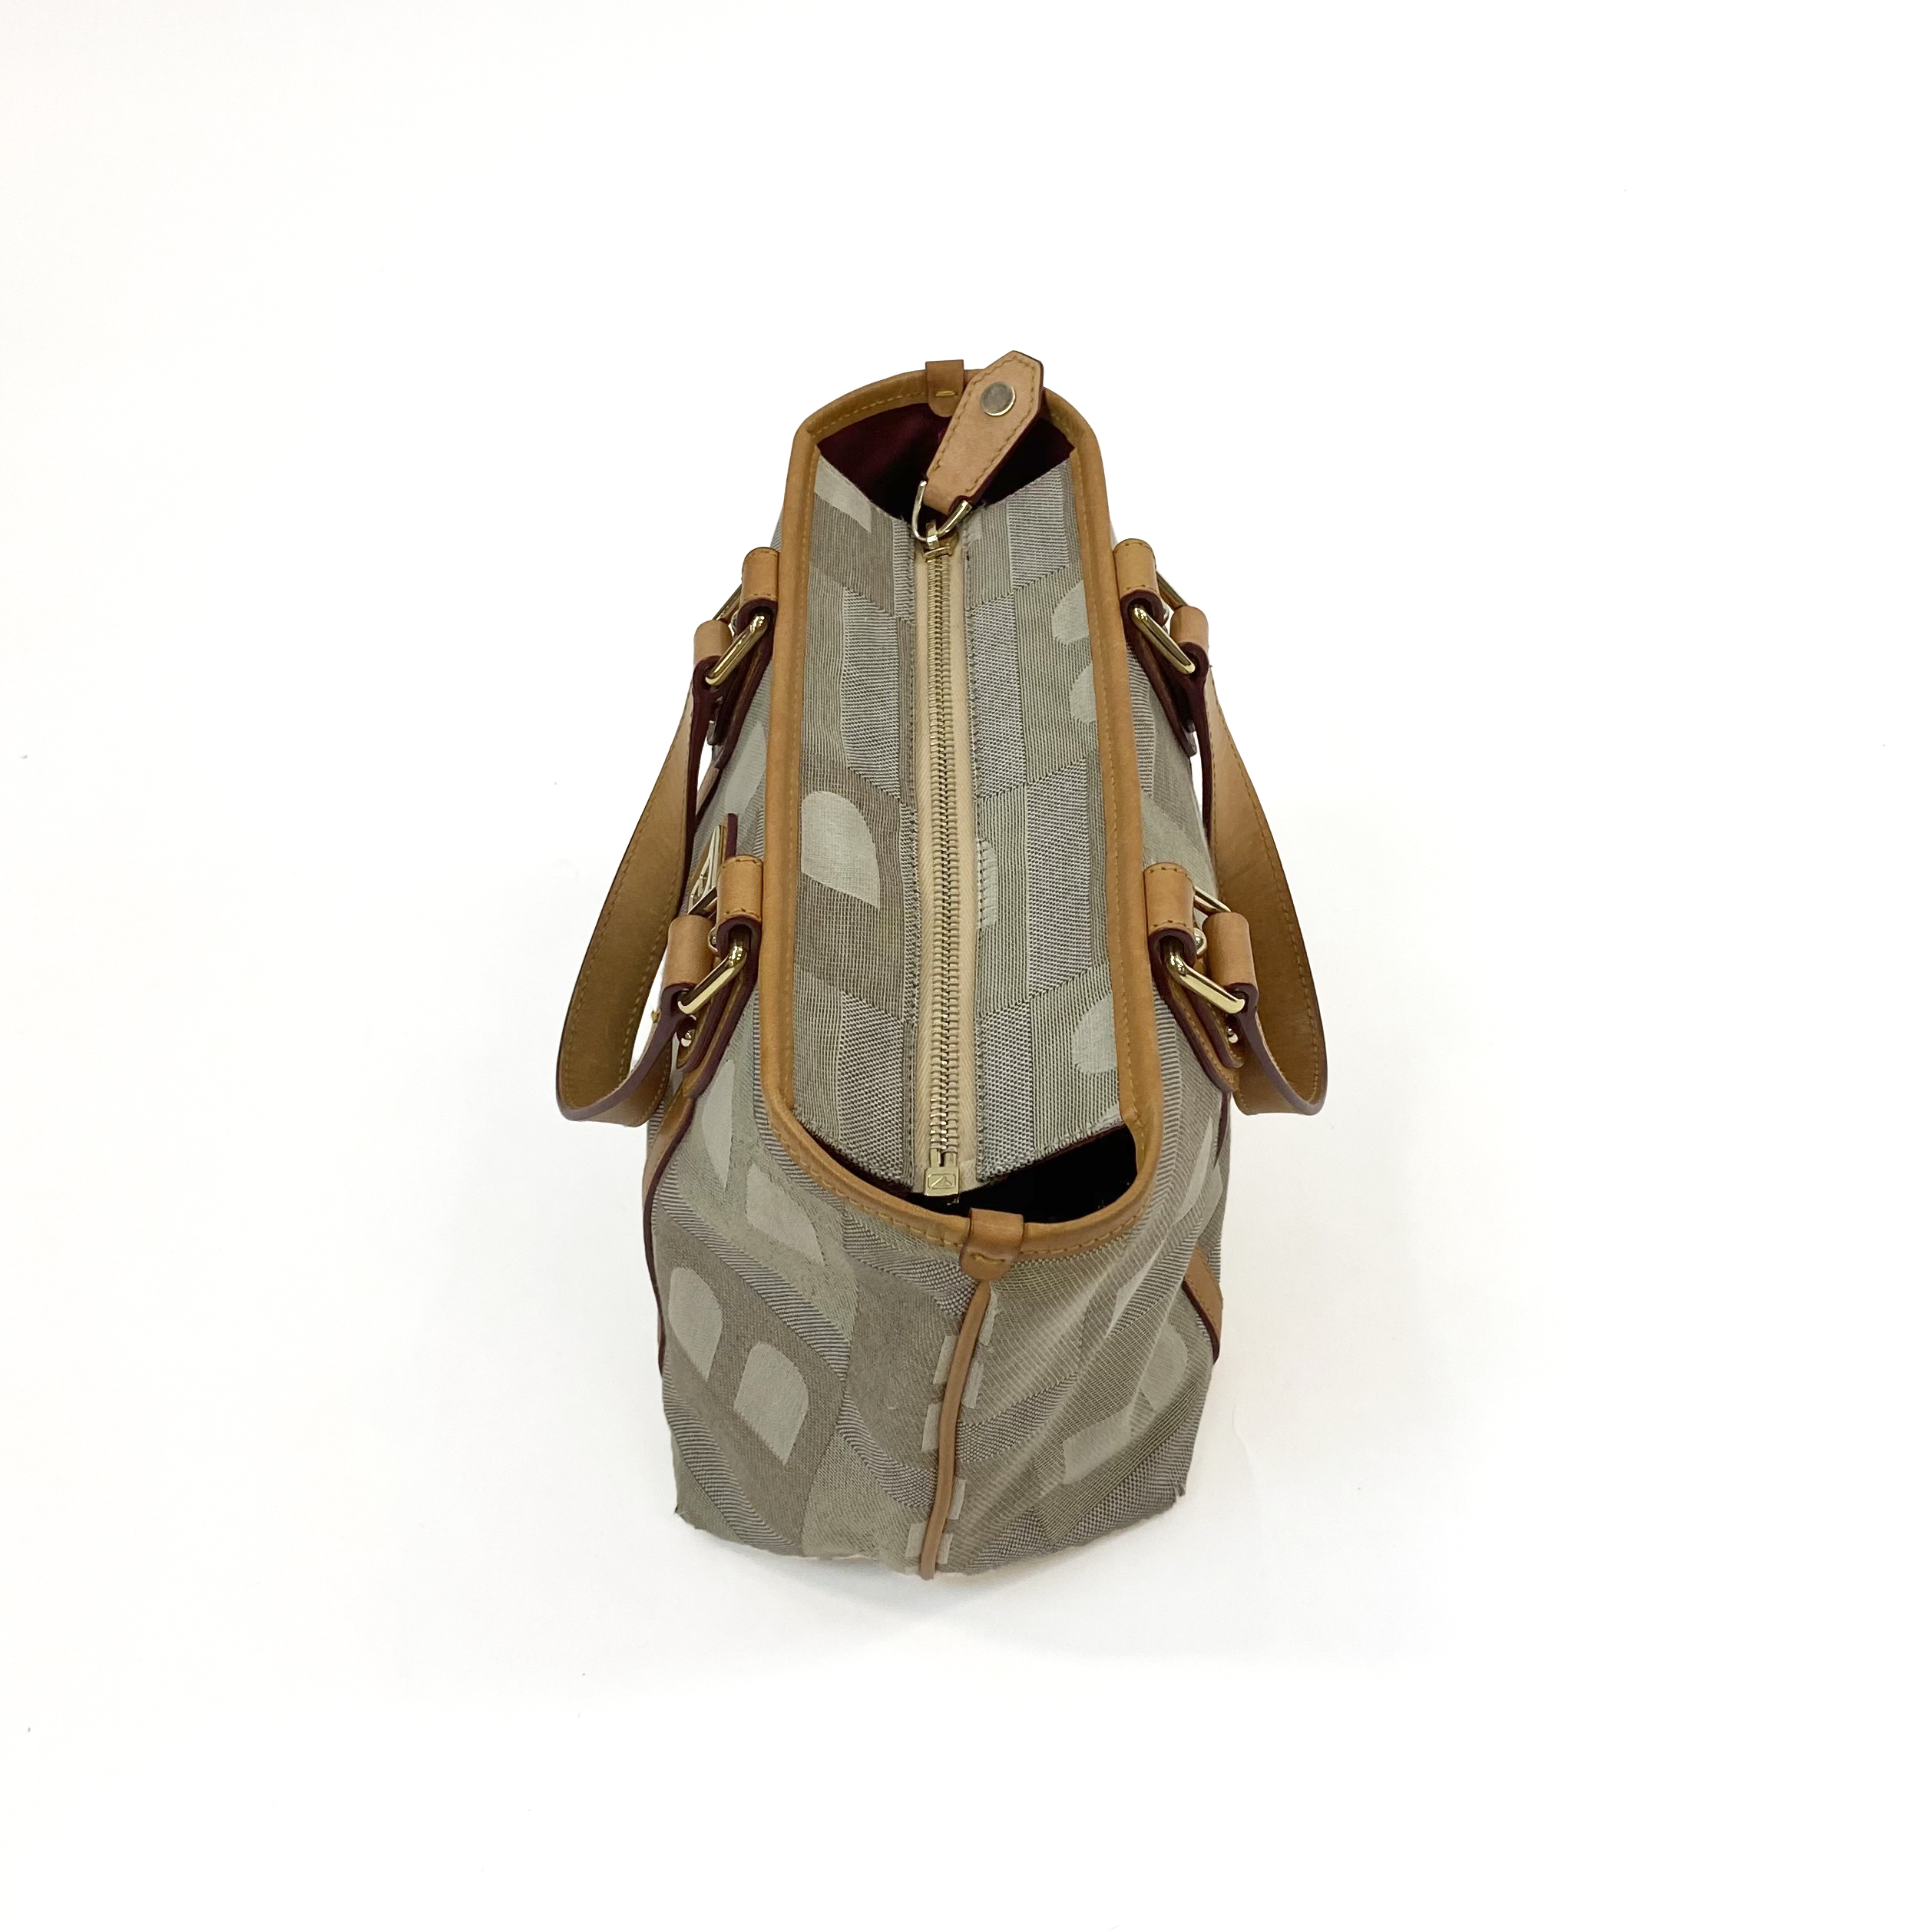 Bally Small Leather/Fabric Handbag